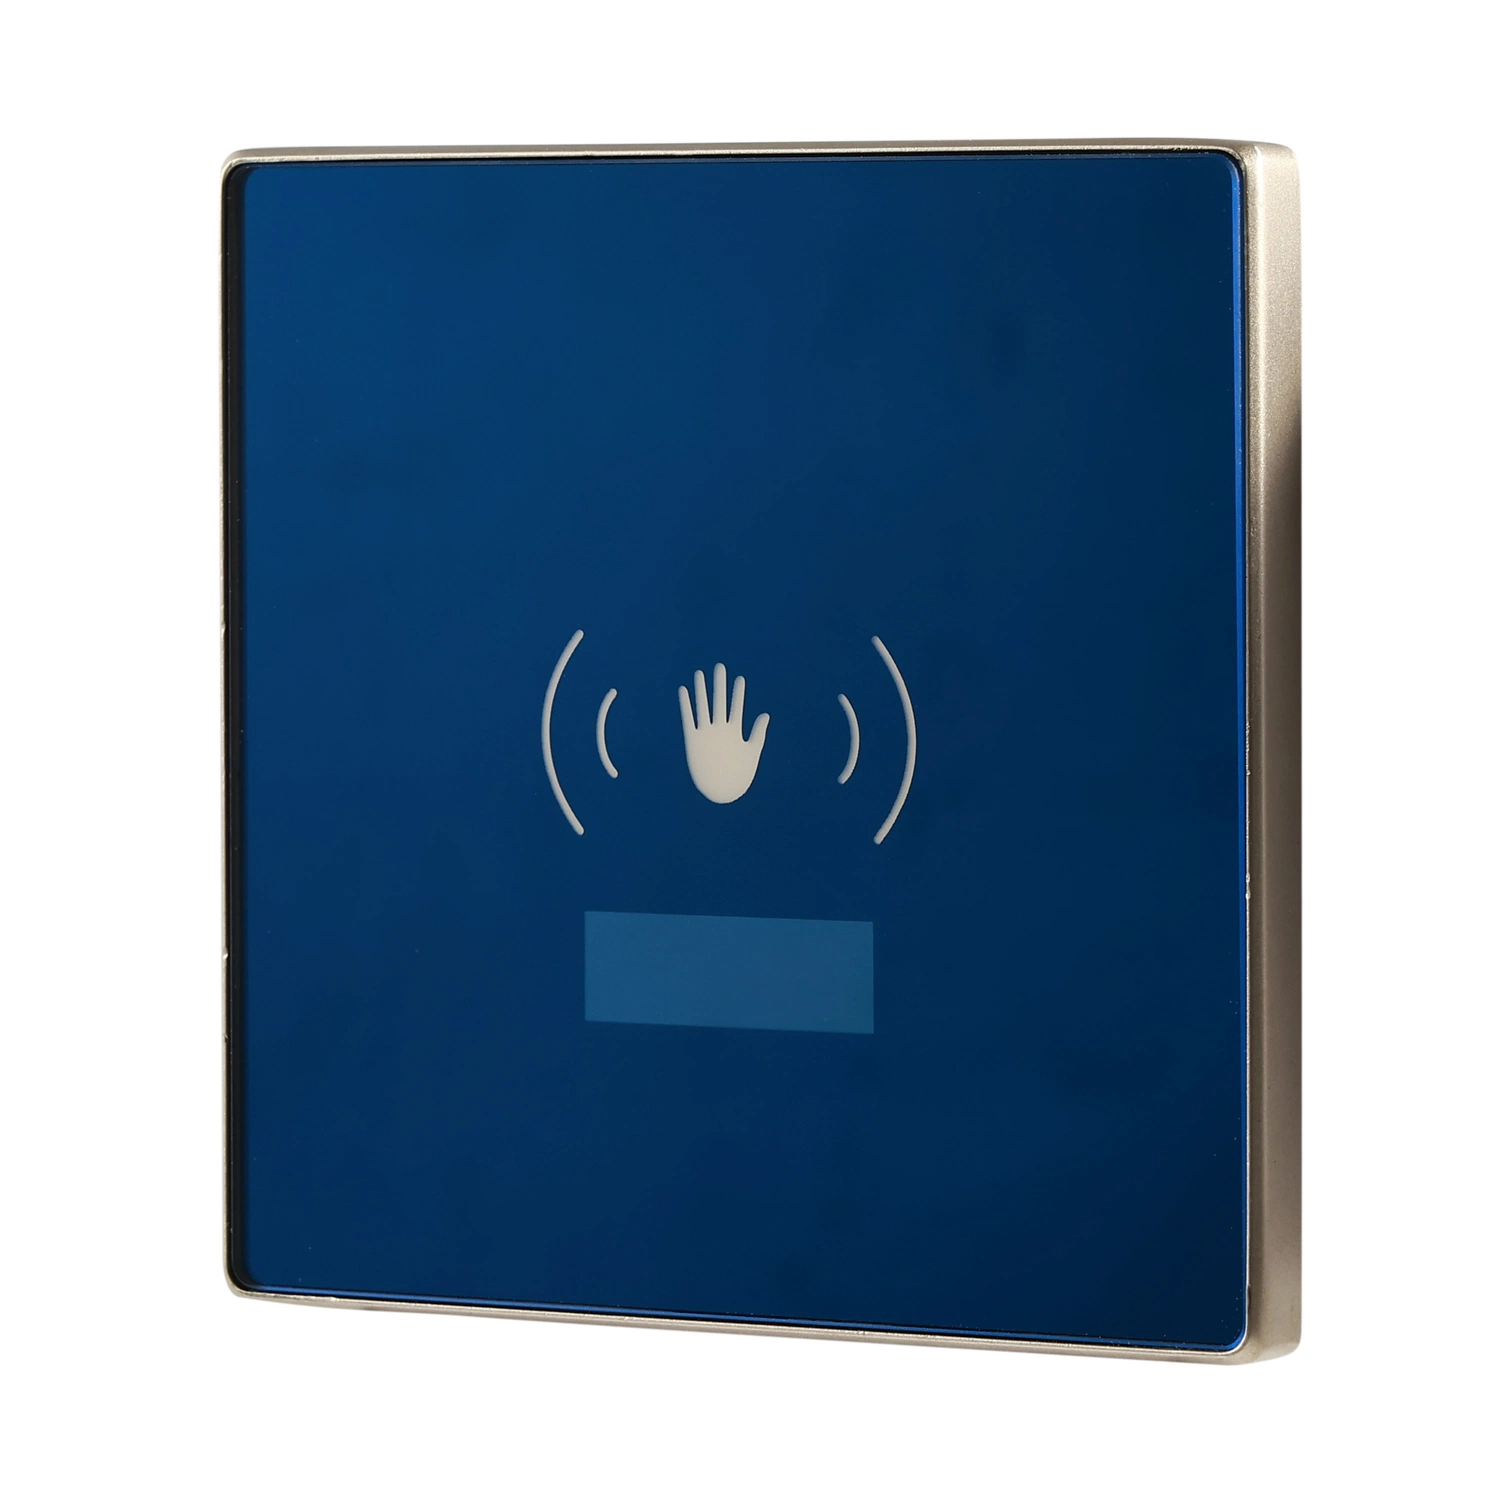 Berührungsloser Infrarot-Handsensor-Schalter für automatische Tür